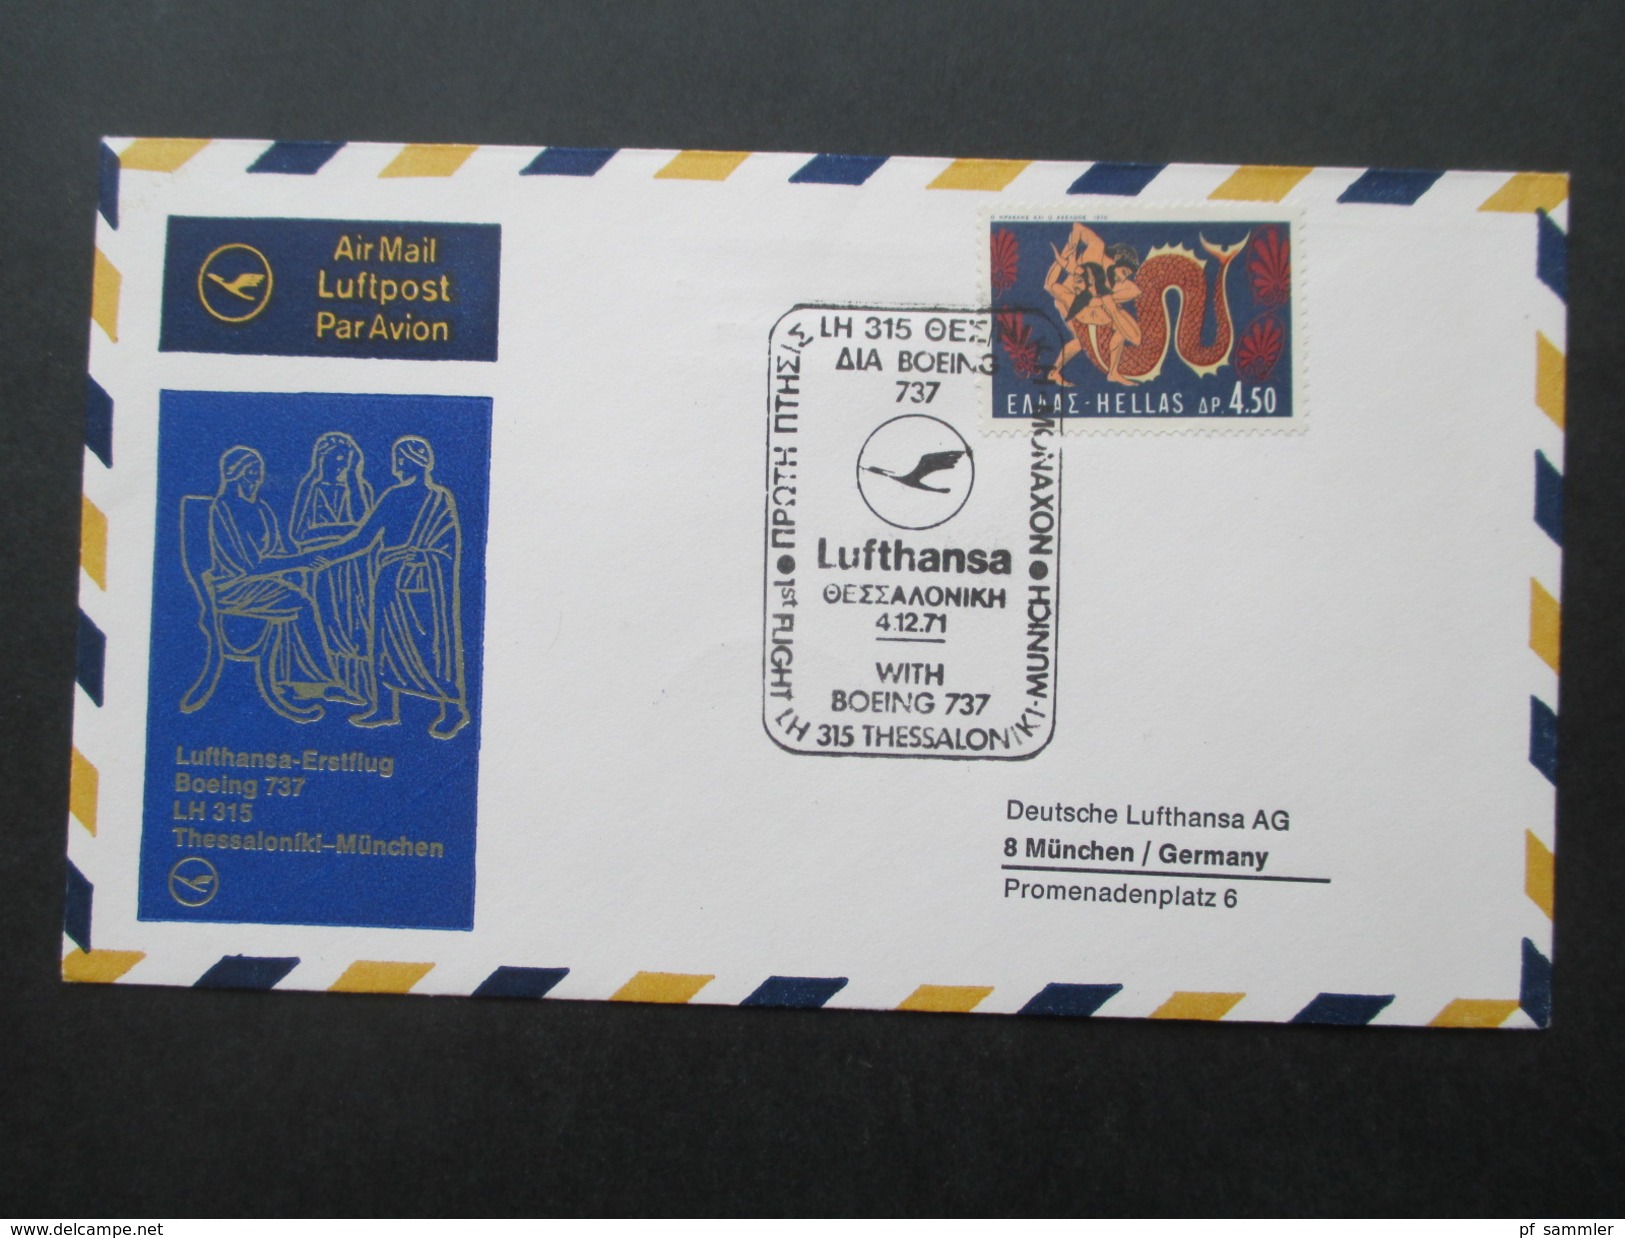 BRD / Berlin  - Europa u. Naher Osten 1. Flug / Lufthansa 40 Belege der Jahre 1957 - 1978 mit besseren!